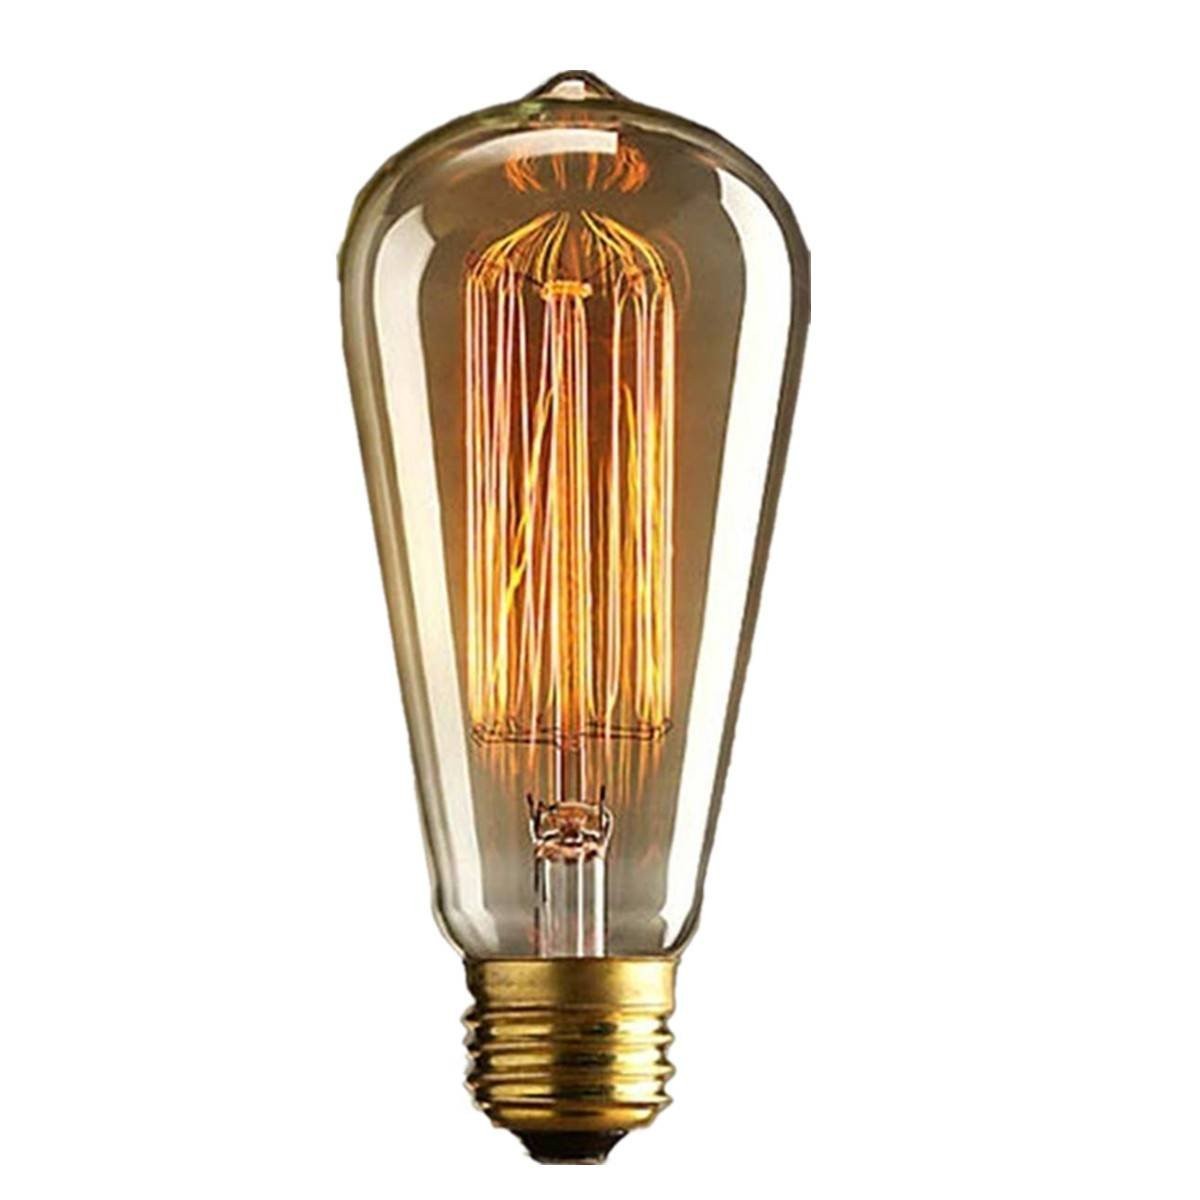 Kingso-2Pcs-110v-60w-Edison-Retro-Series-Tungsten-Lamp-Straight-Wire-1890774-4